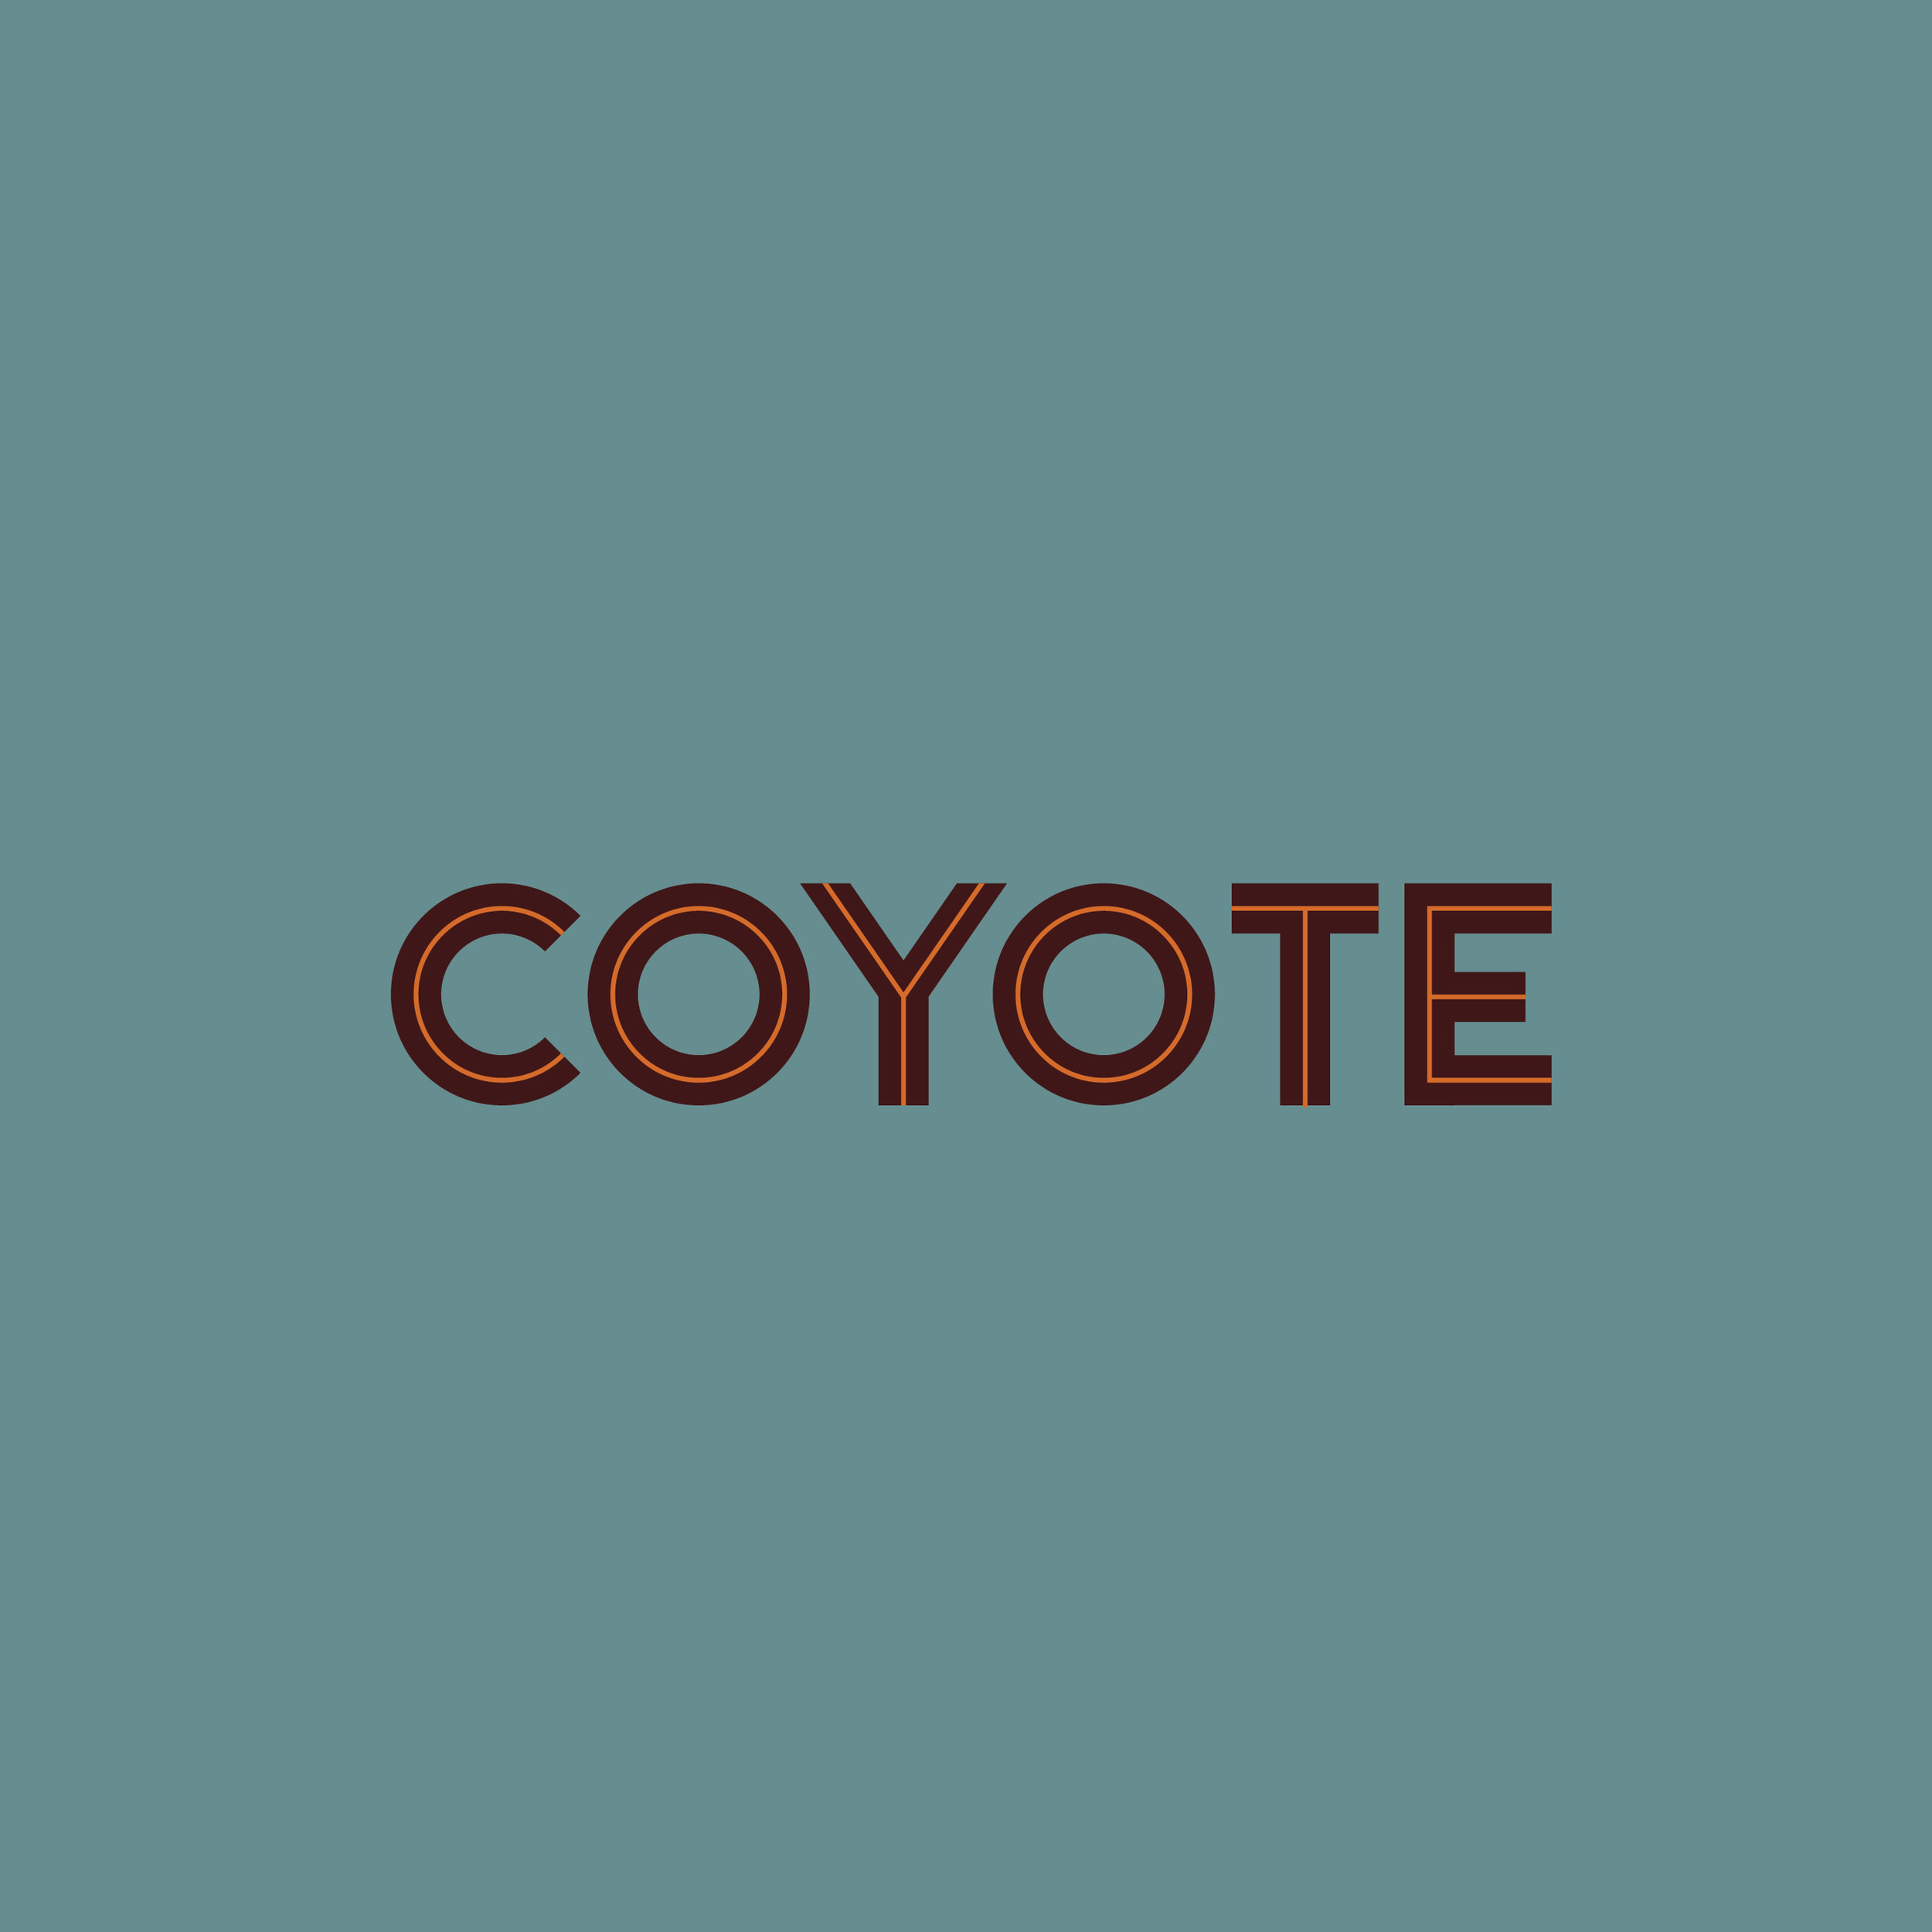 Coyote_Logos-06.jpg